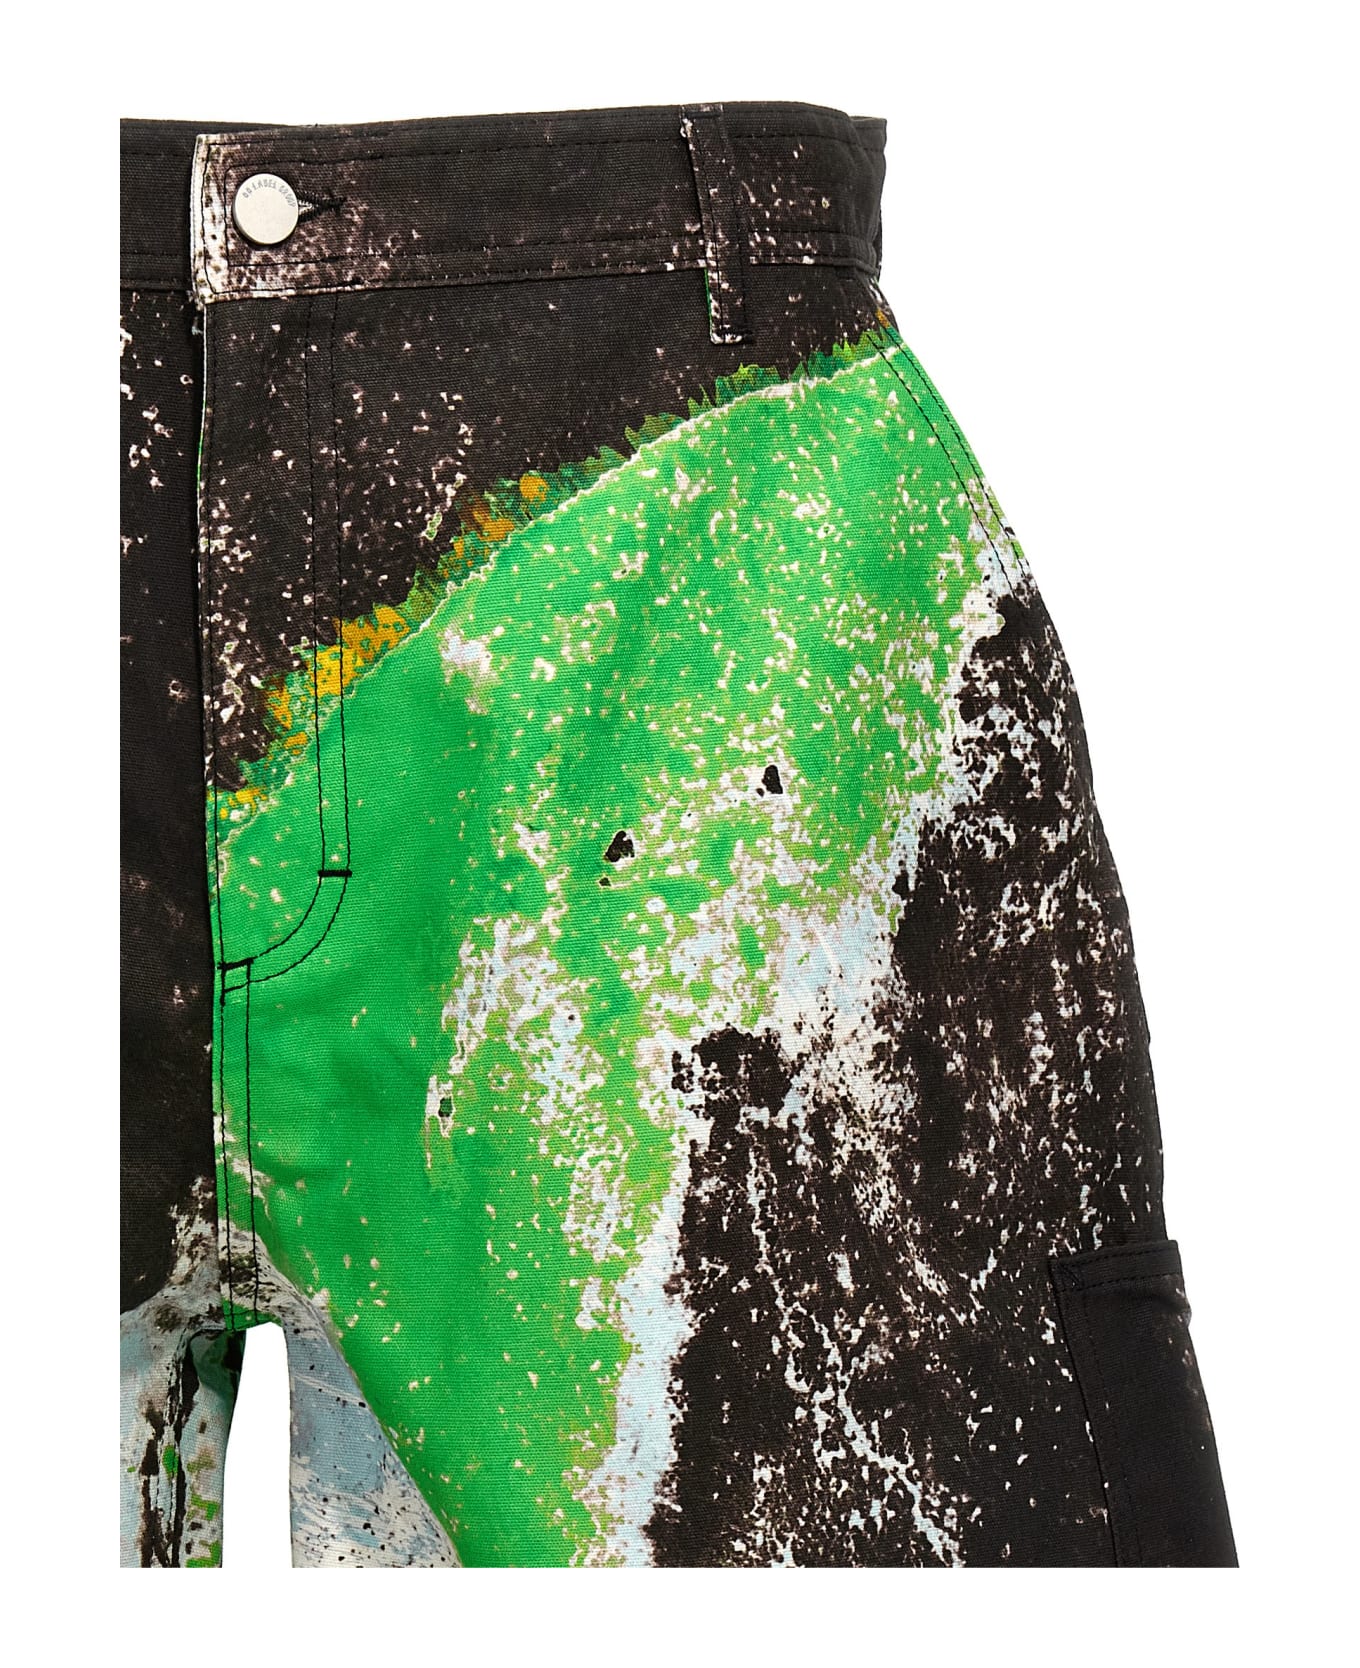 44 Label Group 'corrosive Carpenter' Bermuda Shorts - Multicolor ショートパンツ